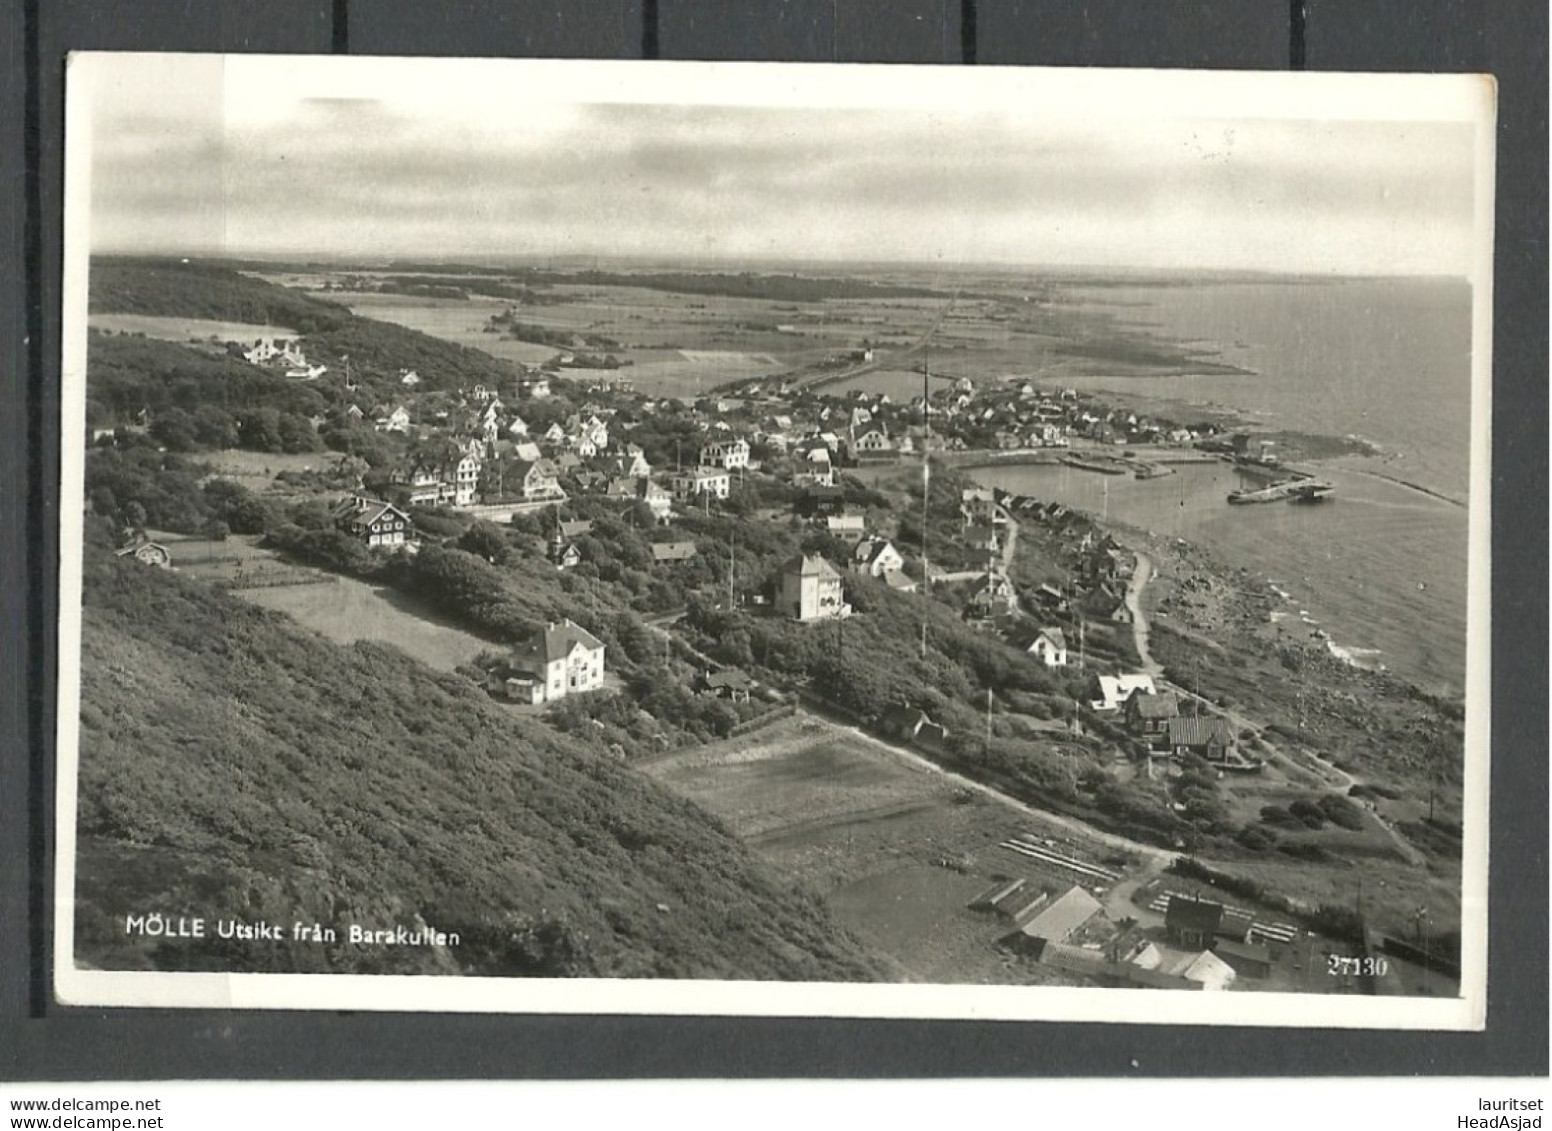 SWEDEN - MÖLLE - View From Barakullen - Photo Post Card, Unused - Sweden